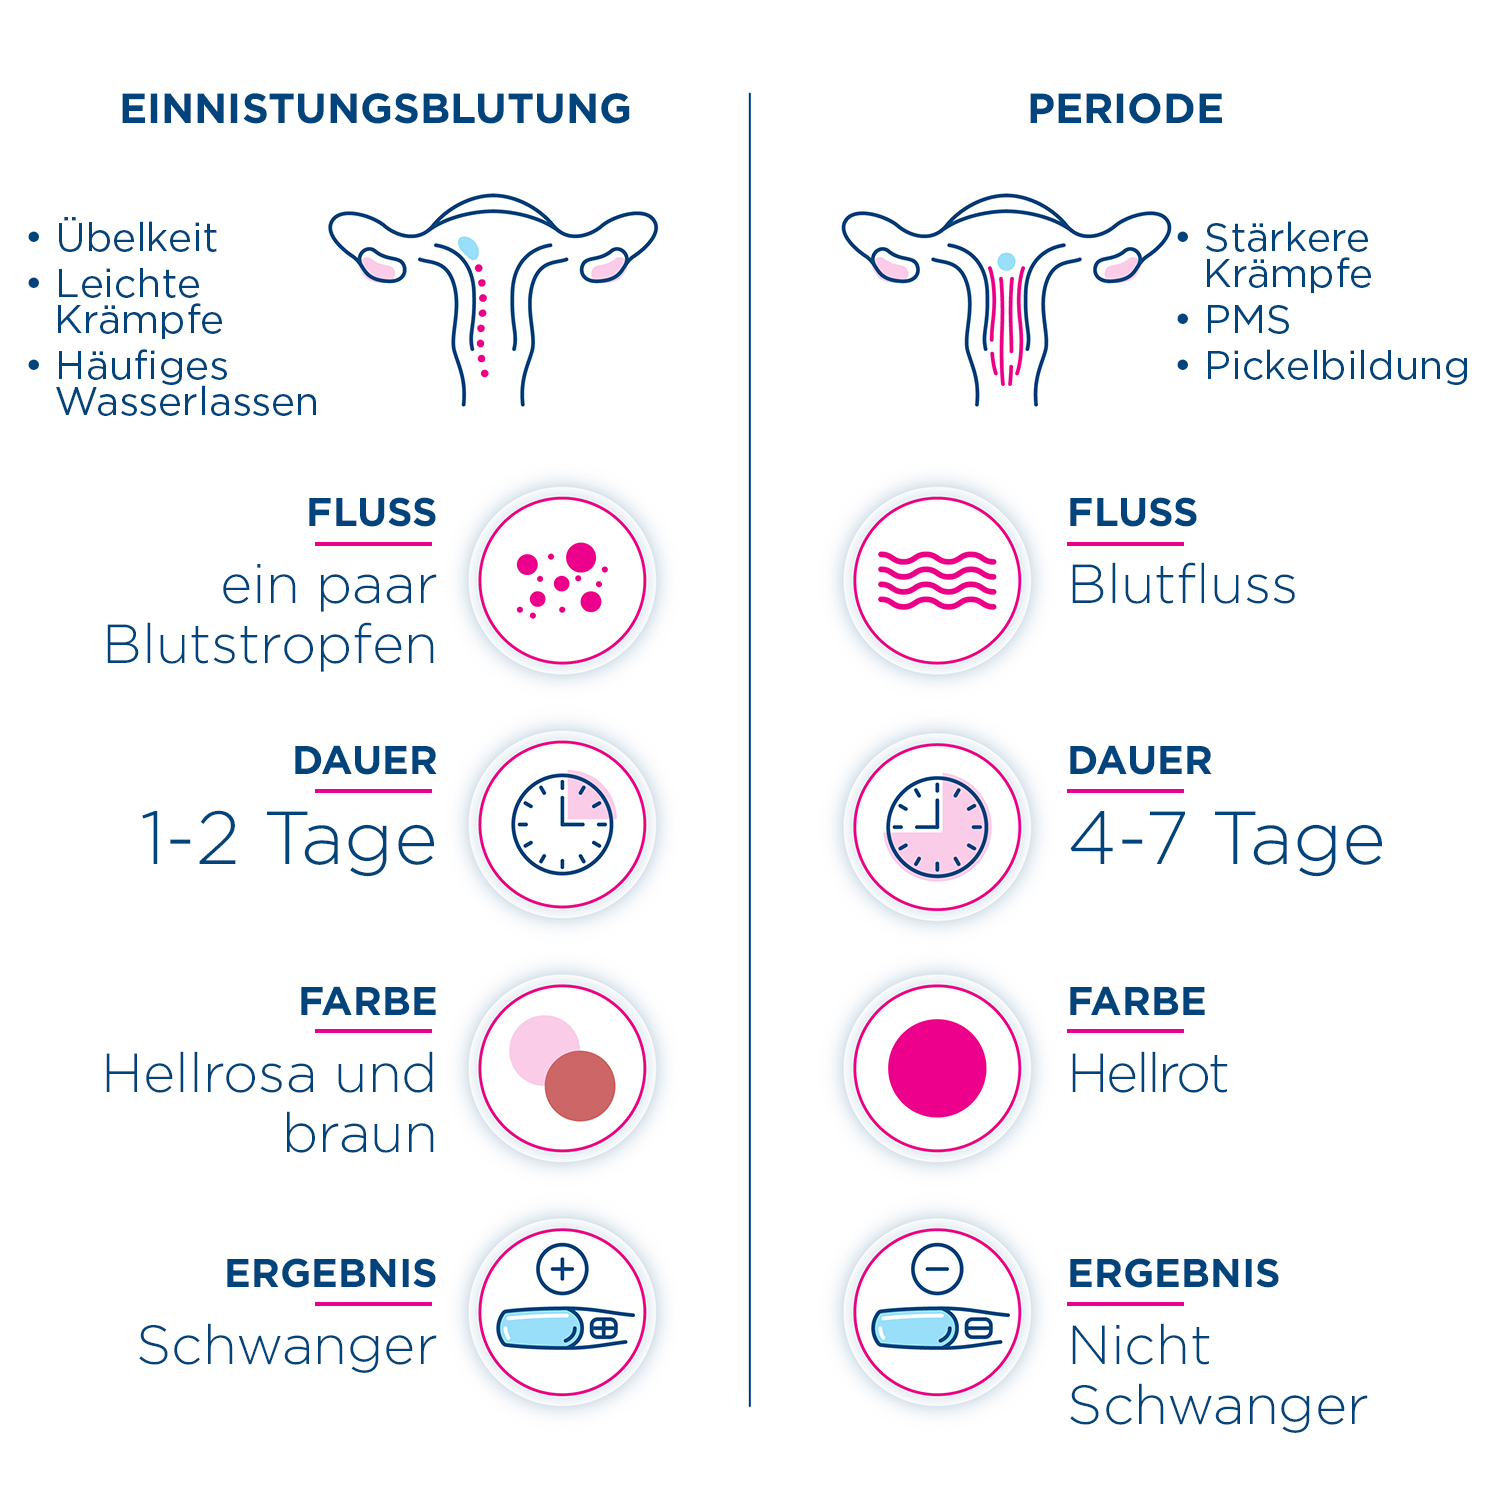 Infografik zum Vergleich der Anzeichen und Symptome, um den Unterschied zwischen Implantationsblutungen und Ihrer Periode festzustellen.